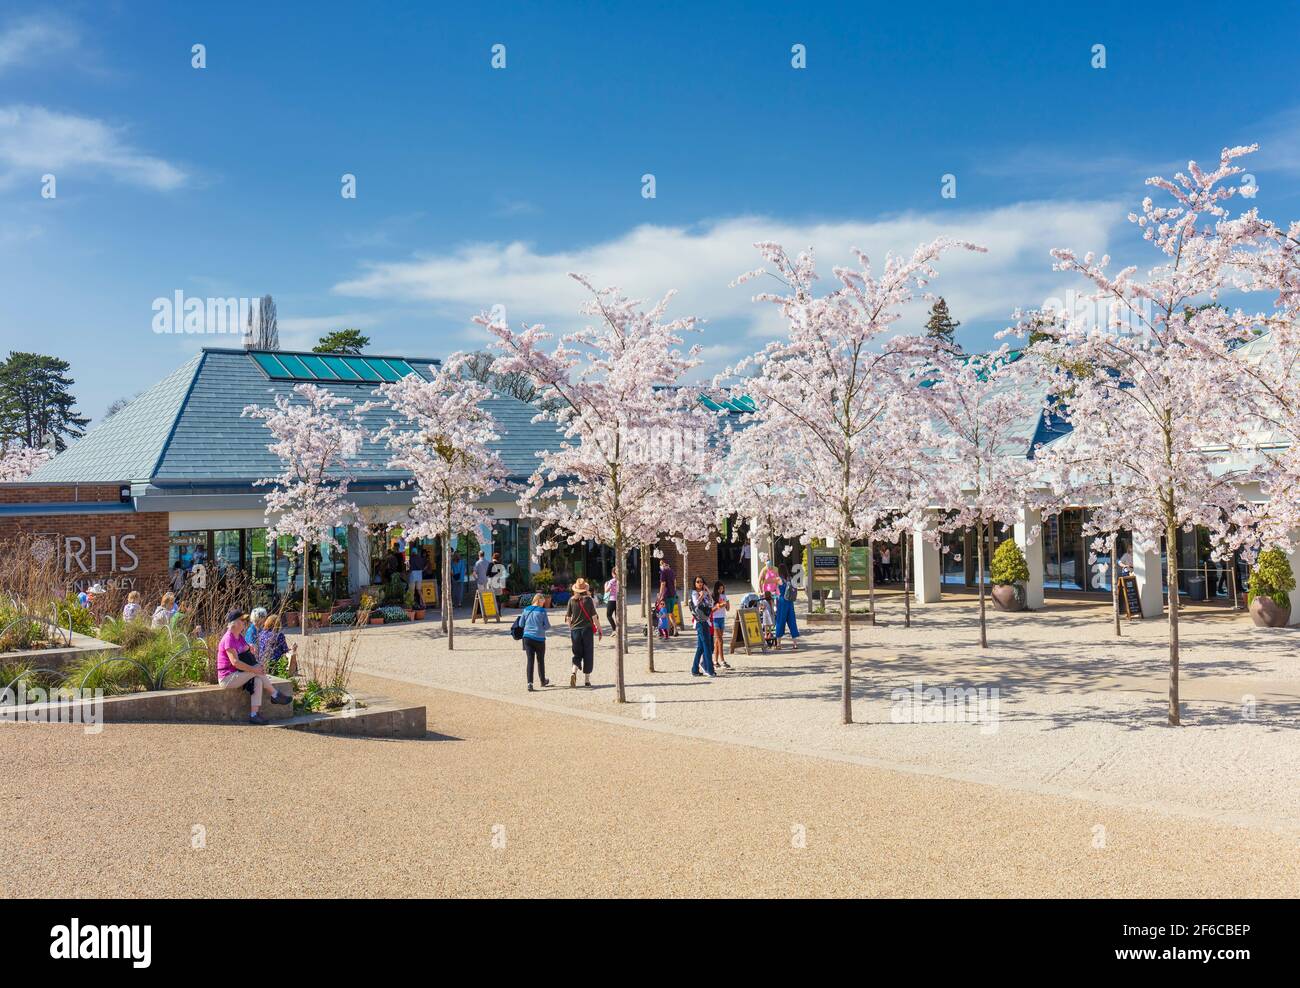 Ingresso RHS Wisley con alberi di ciliegio in fiore. Foto Stock